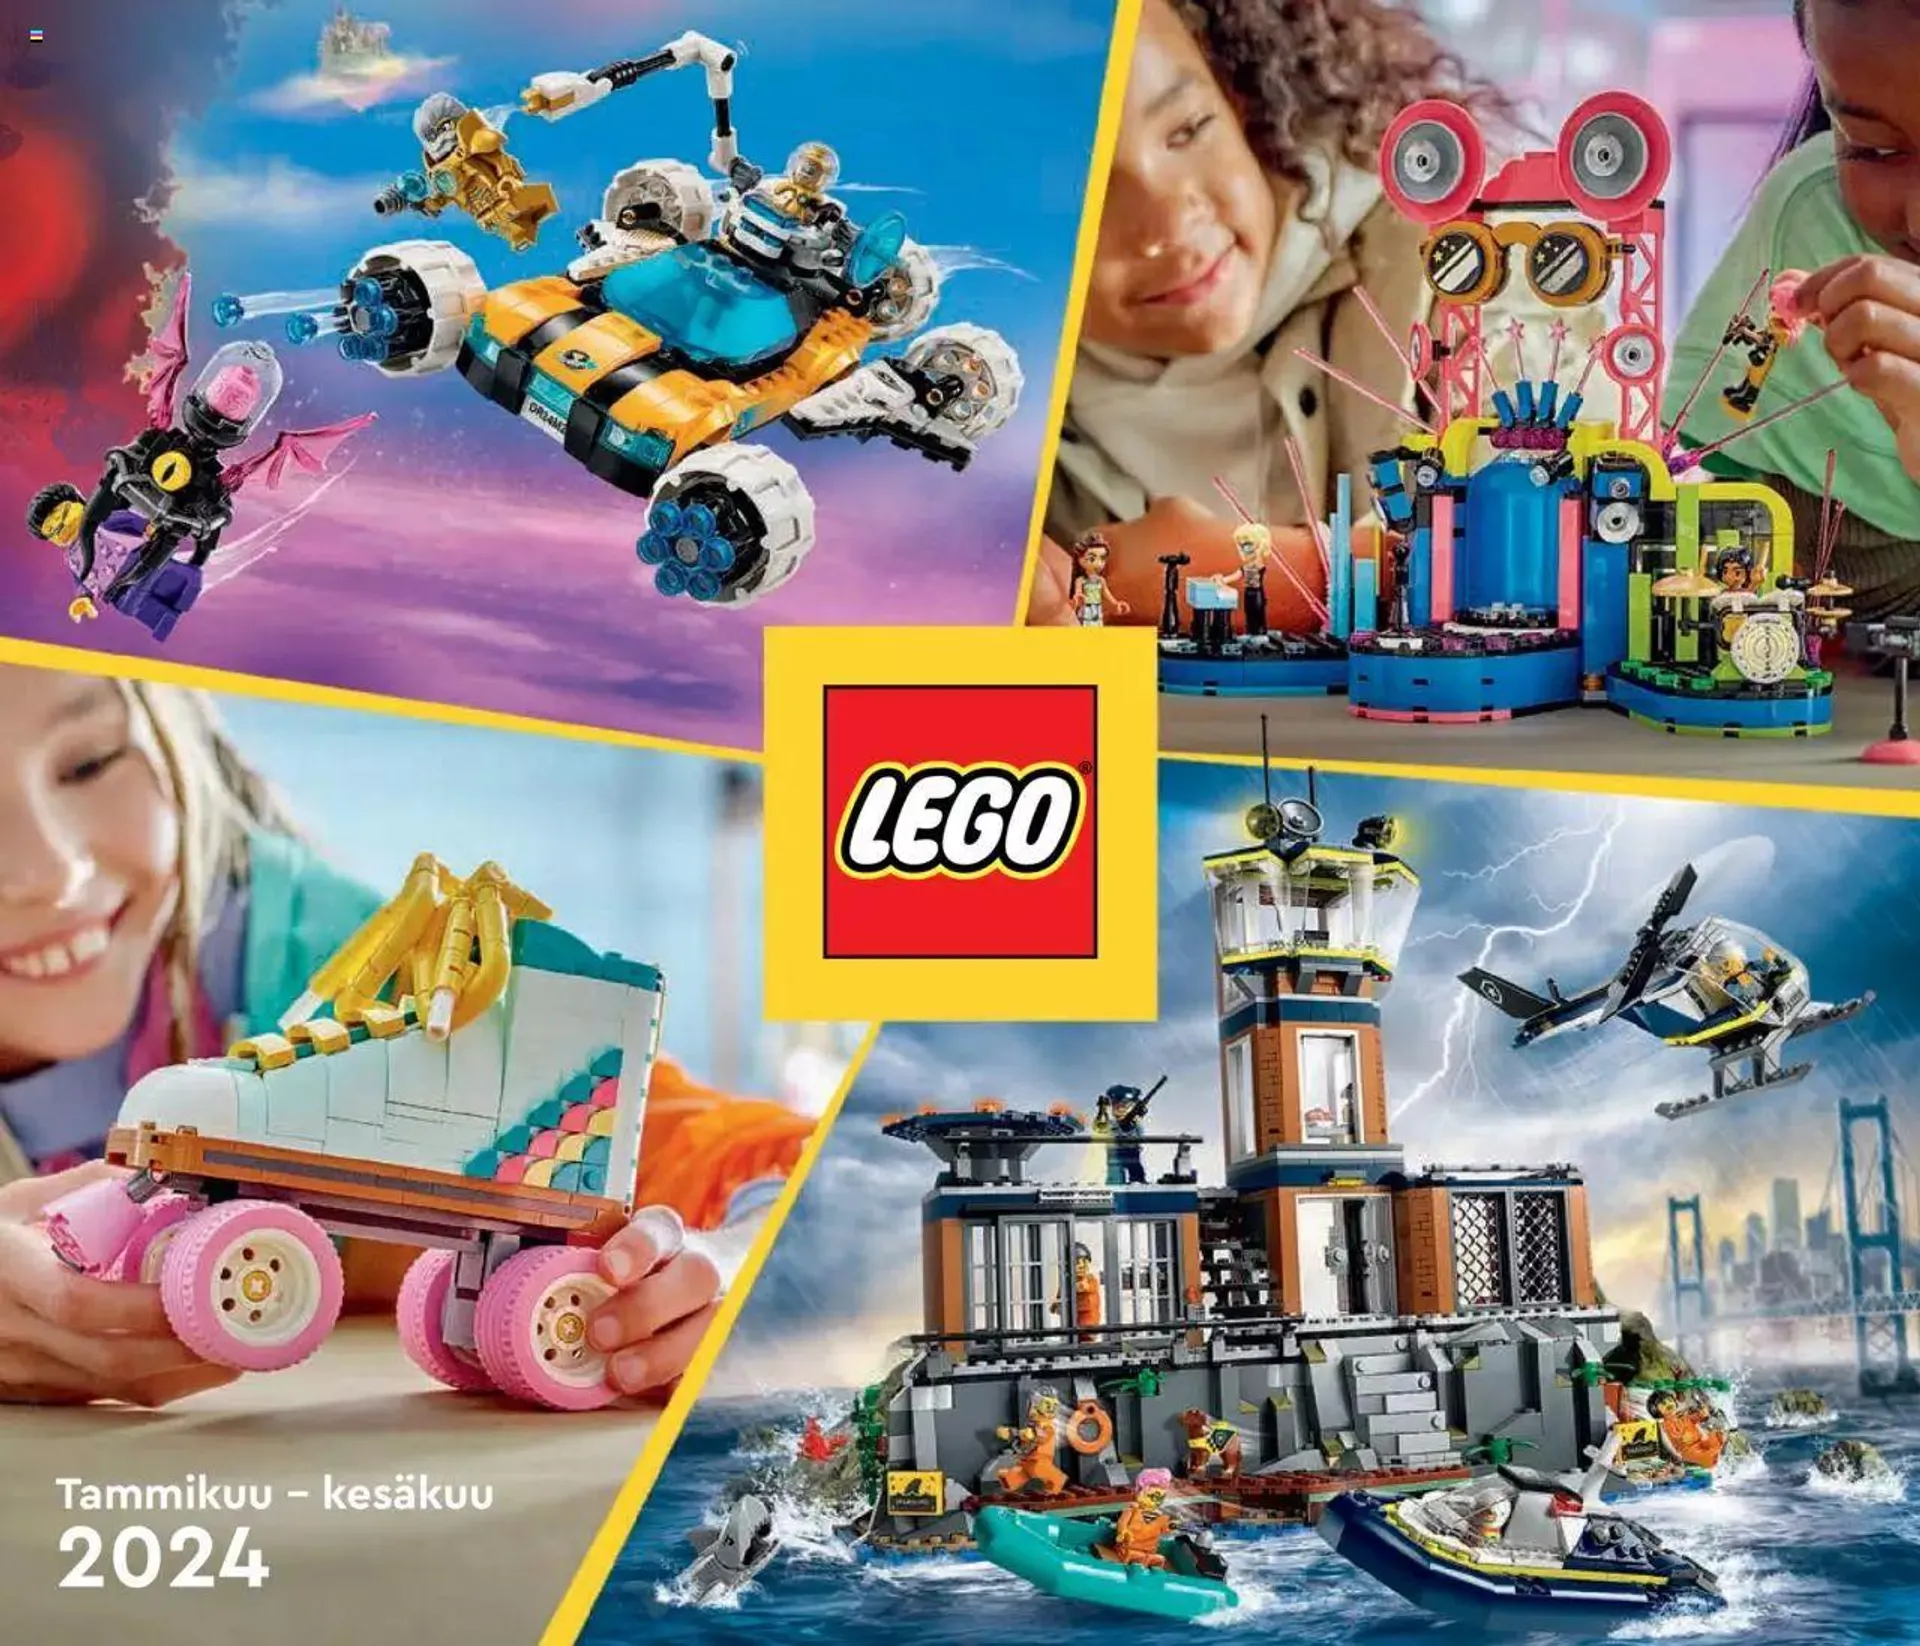 Tokmanni - Tammikuu – kesäkuu 2024 LEGO-kuvasto voimassa alkaen 1. tammikuuta - 30. kesäkuuta 2024 - Tarjouslehti sivu 